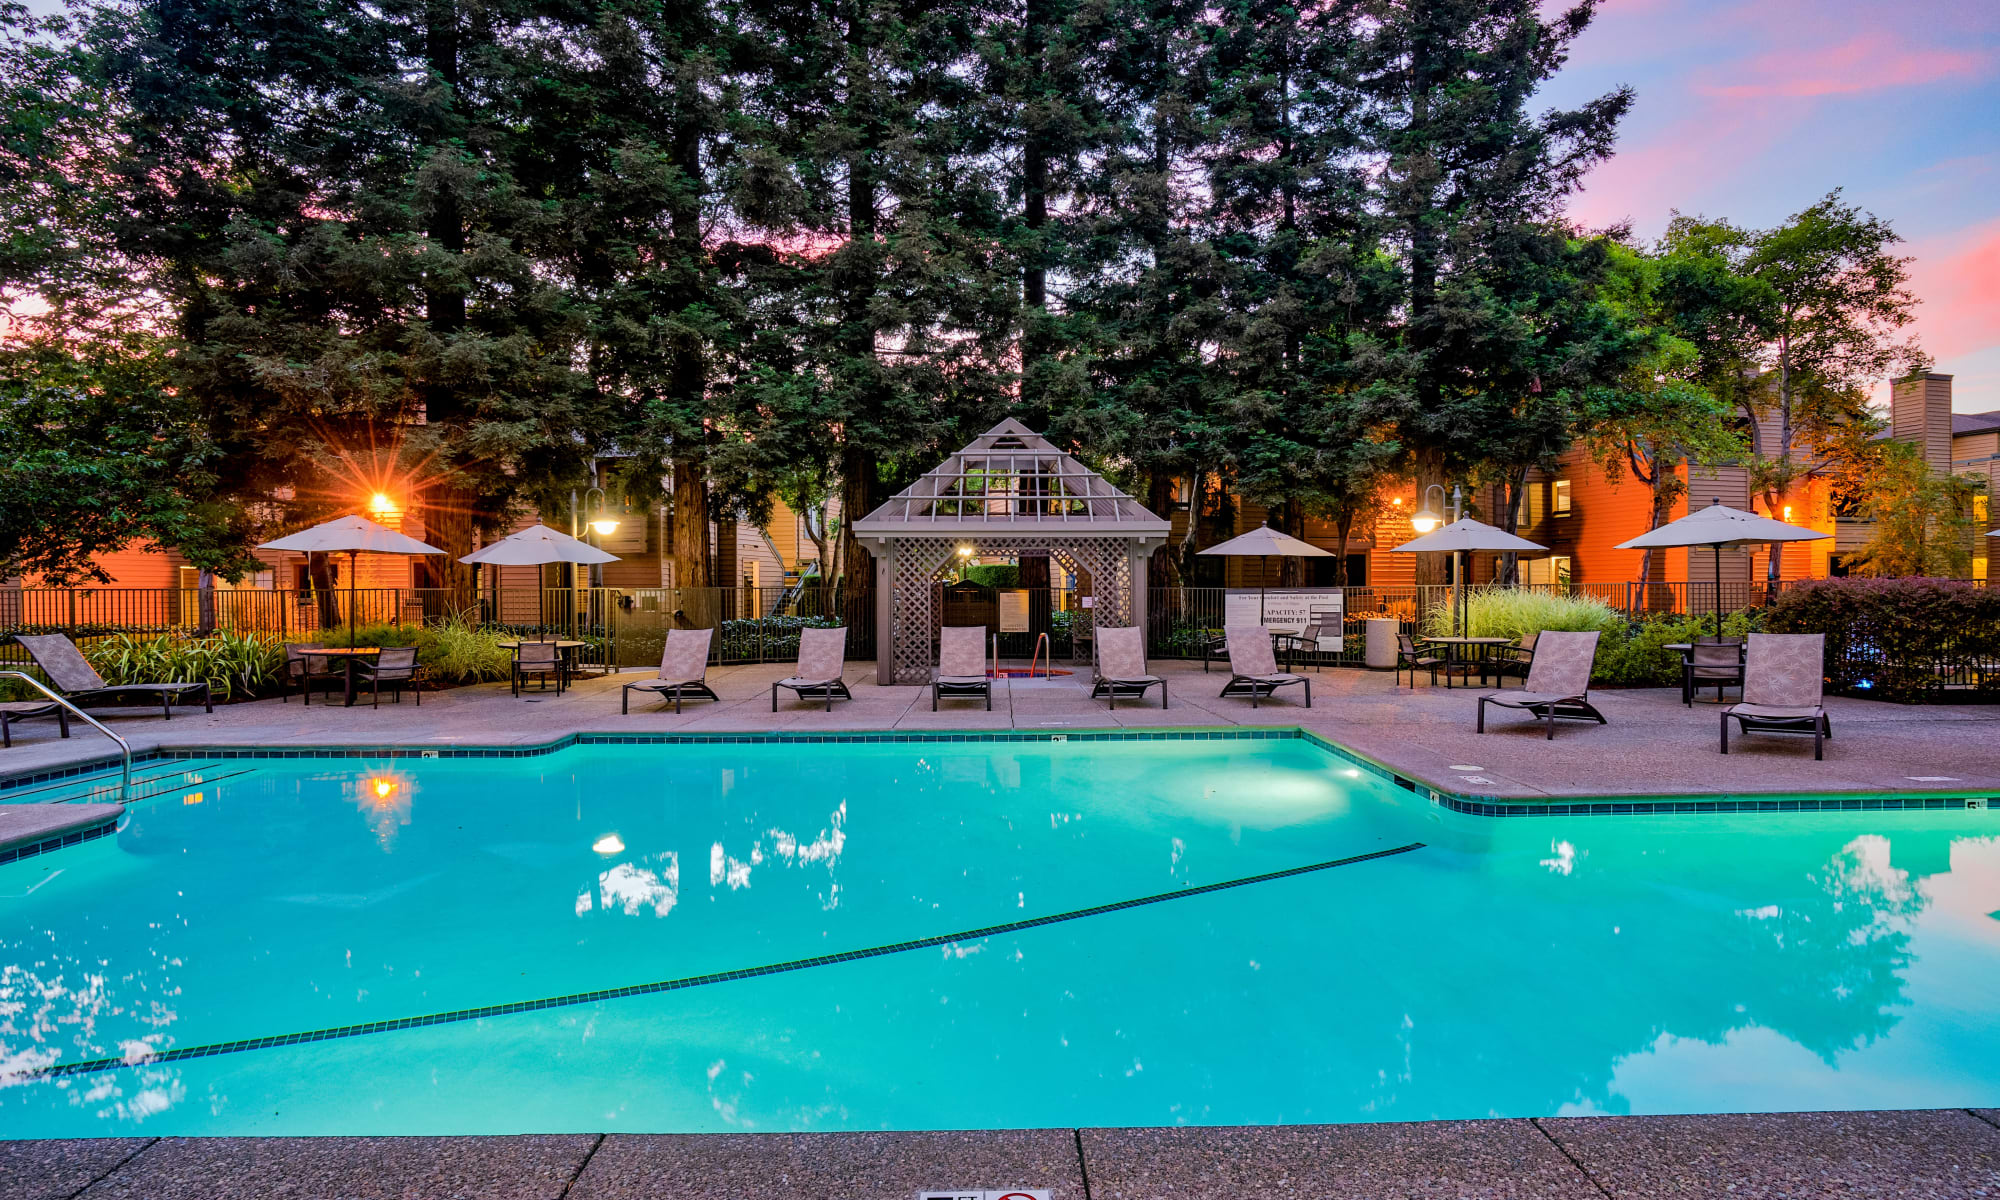 Pool at night at Shadow Creek Apartments in Santa Rosa, California